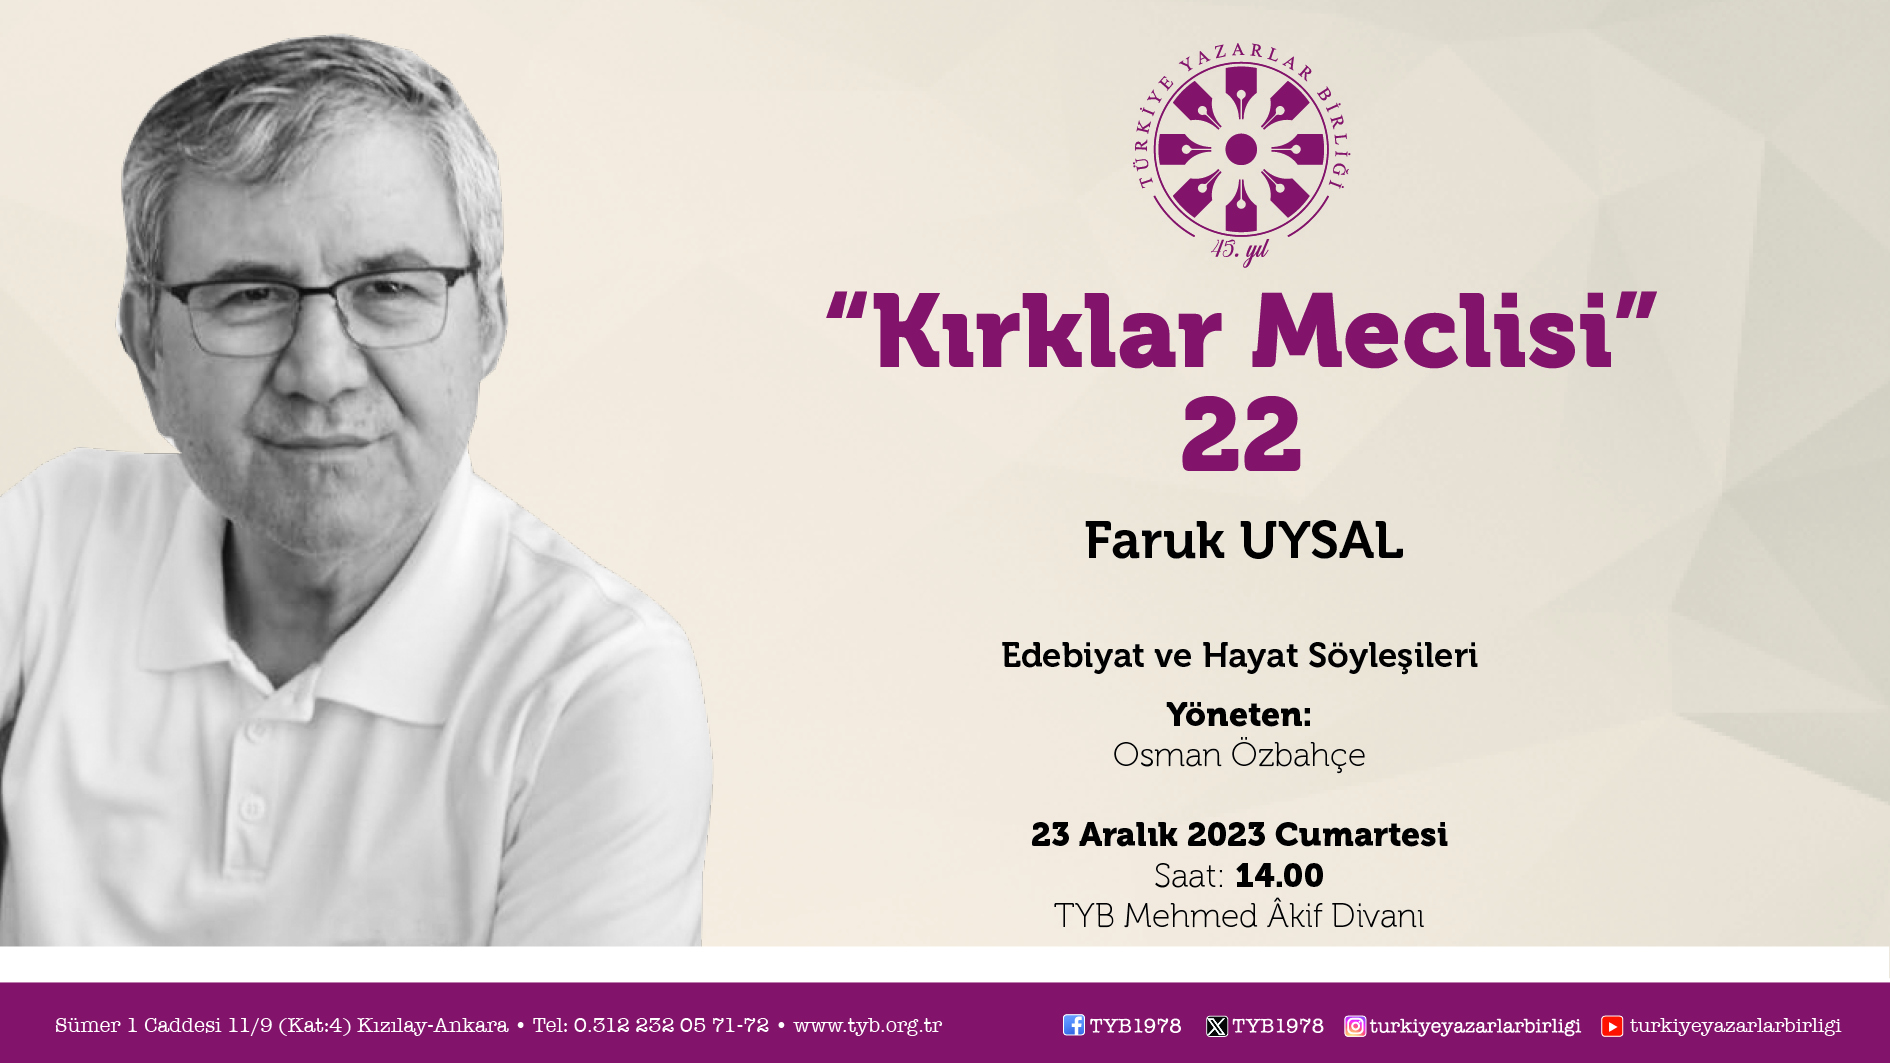 Yazar Faruk Uysal "Kırklar Meclisi"nde konuşacak